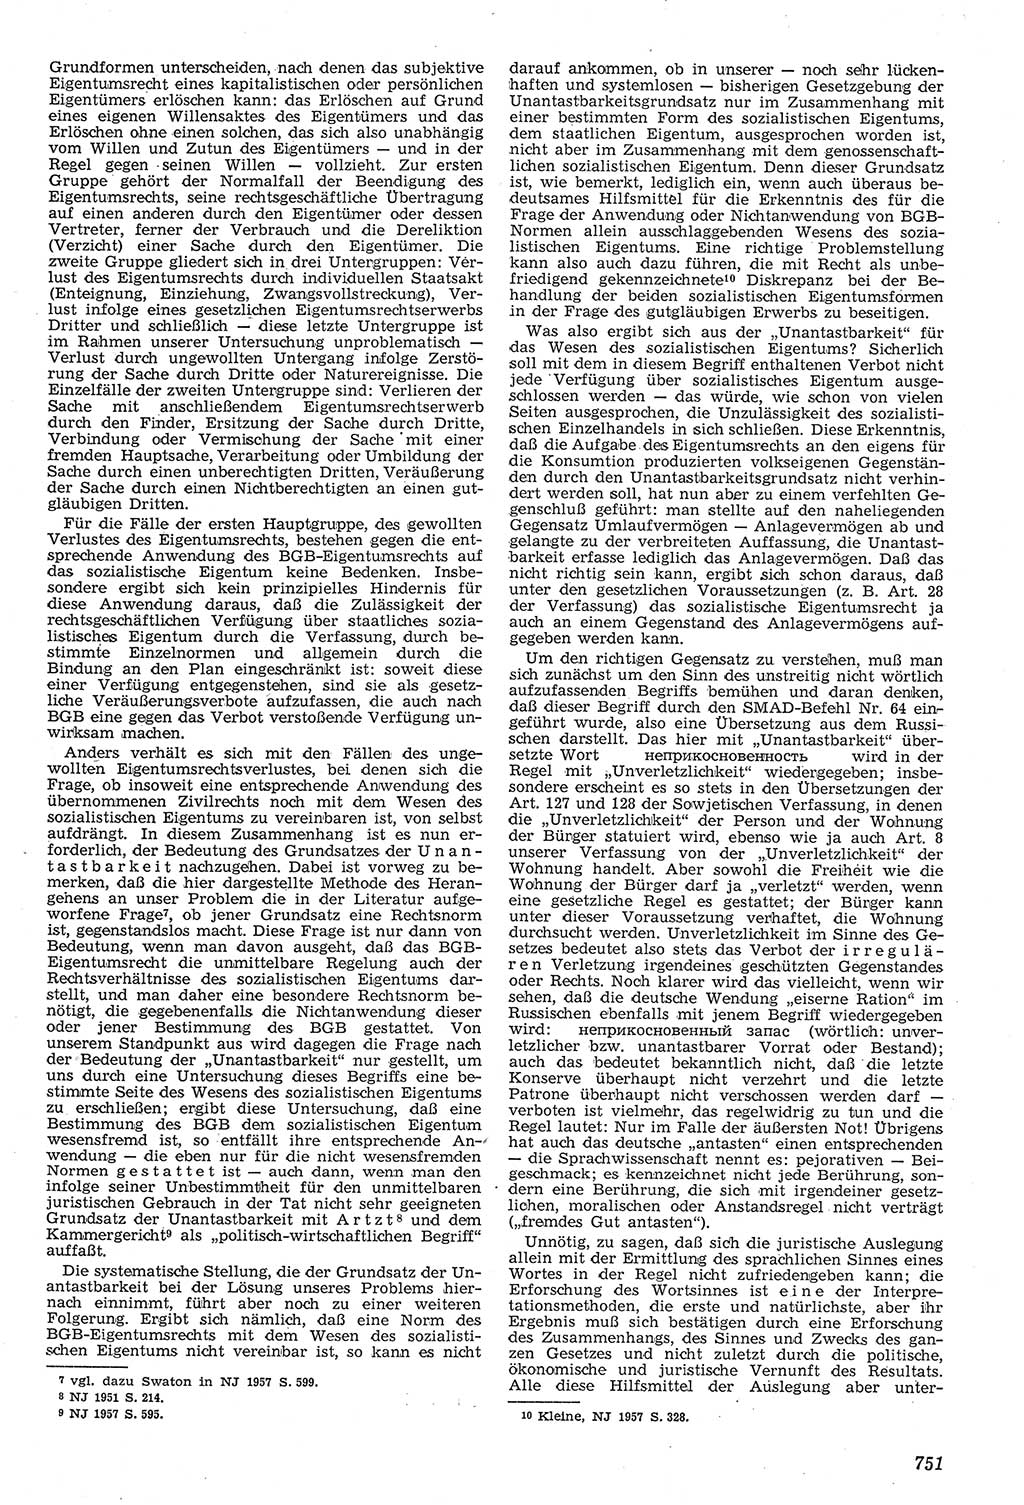 Neue Justiz (NJ), Zeitschrift für Recht und Rechtswissenschaft [Deutsche Demokratische Republik (DDR)], 11. Jahrgang 1957, Seite 751 (NJ DDR 1957, S. 751)